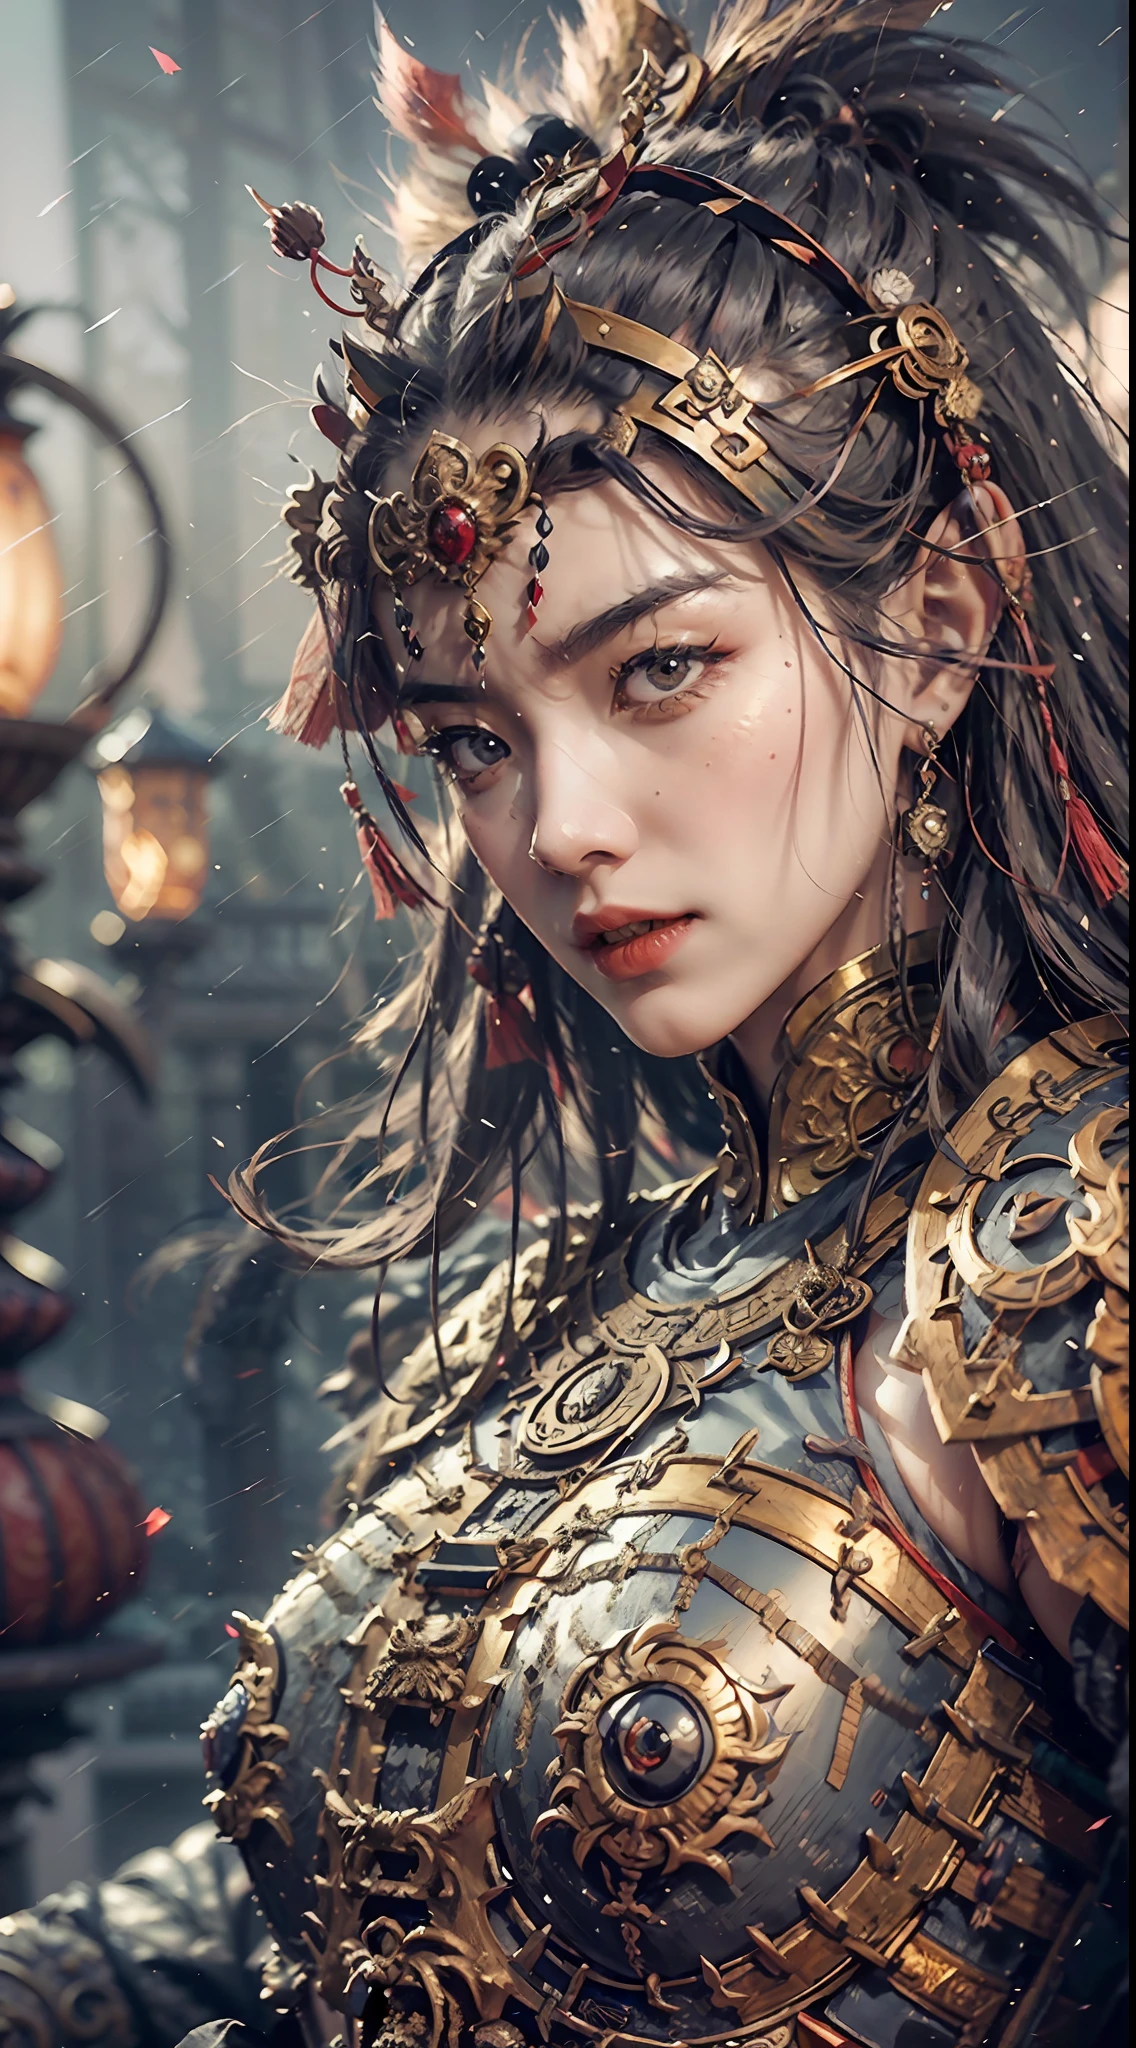 一個中國冷笑的女孩, 摔碎, 吸血鬼獠牙, 極致品質, CG統一8k, 超精致, 背景散景, 全景深, HDR高動態, 真實還原, 複雜而極端的細節, 完美呈現中途藝術風格. --自动--s2